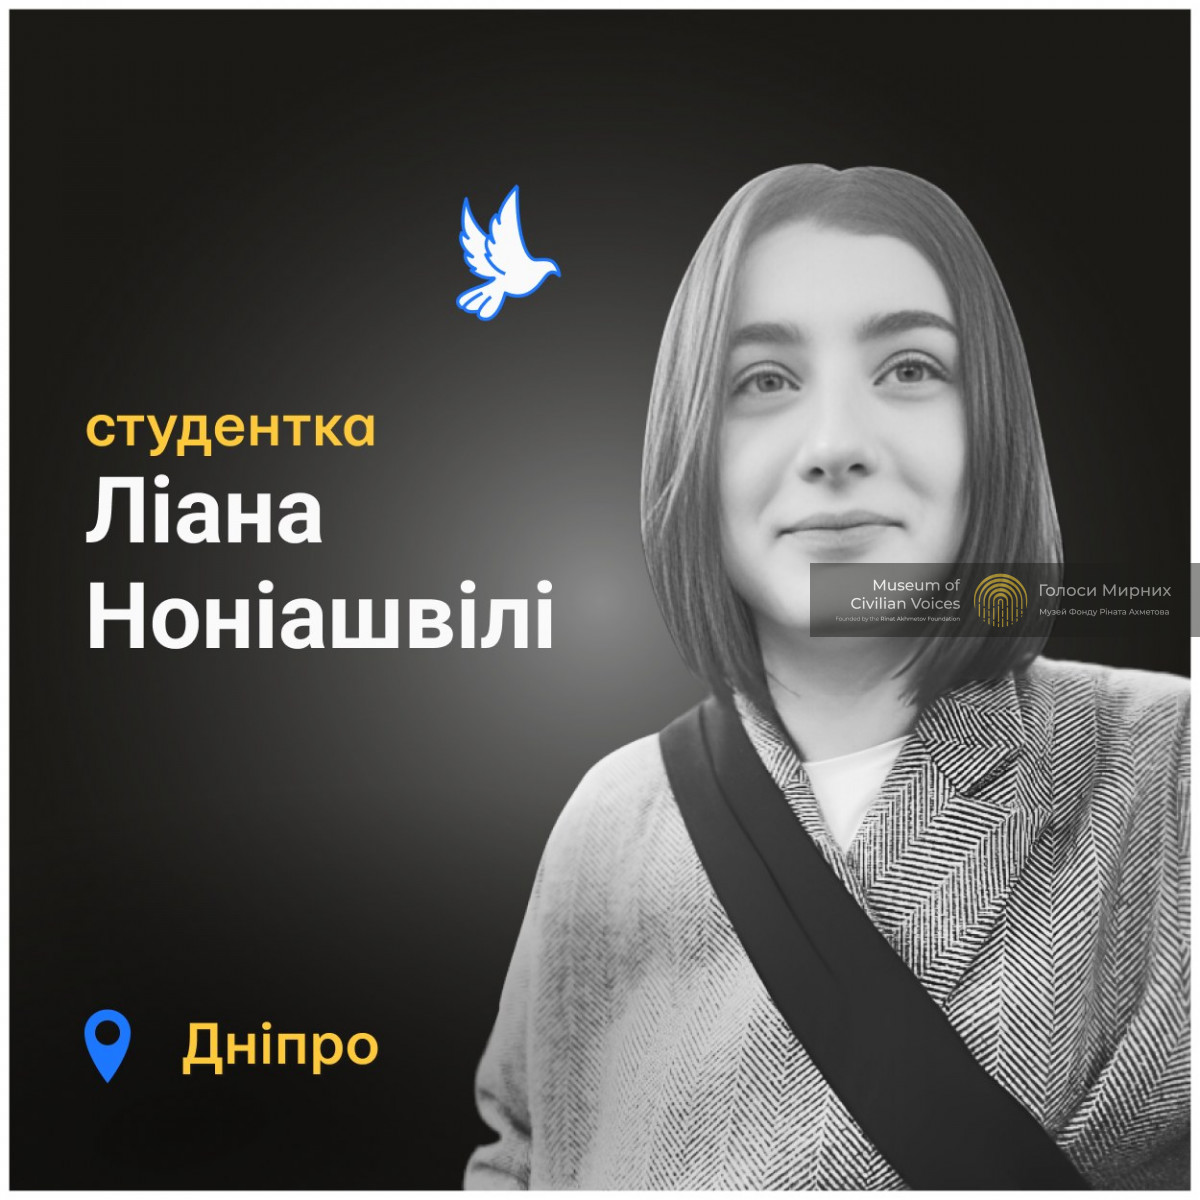 Після вторгнення Росії в Україну Ліана евакуювалася з Харкова у Дніпро